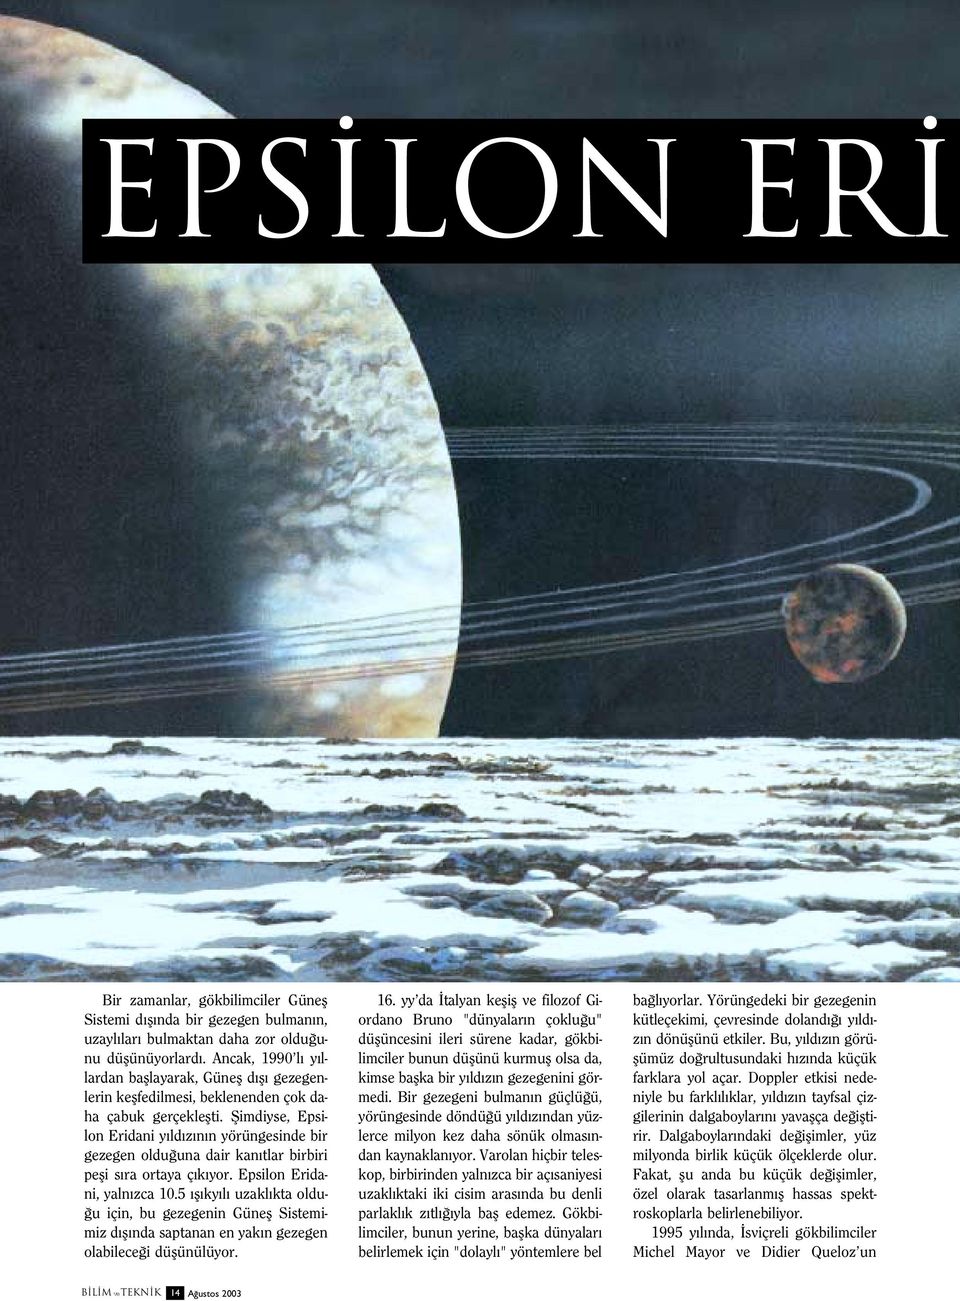 fiimdiyse, Epsilon Eridani y ld z n n yörüngesinde bir gezegen oldu una dair kan tlar birbiri pefli s ra ortaya ç k yor. Epsilon Eridani, yaln zca 10.